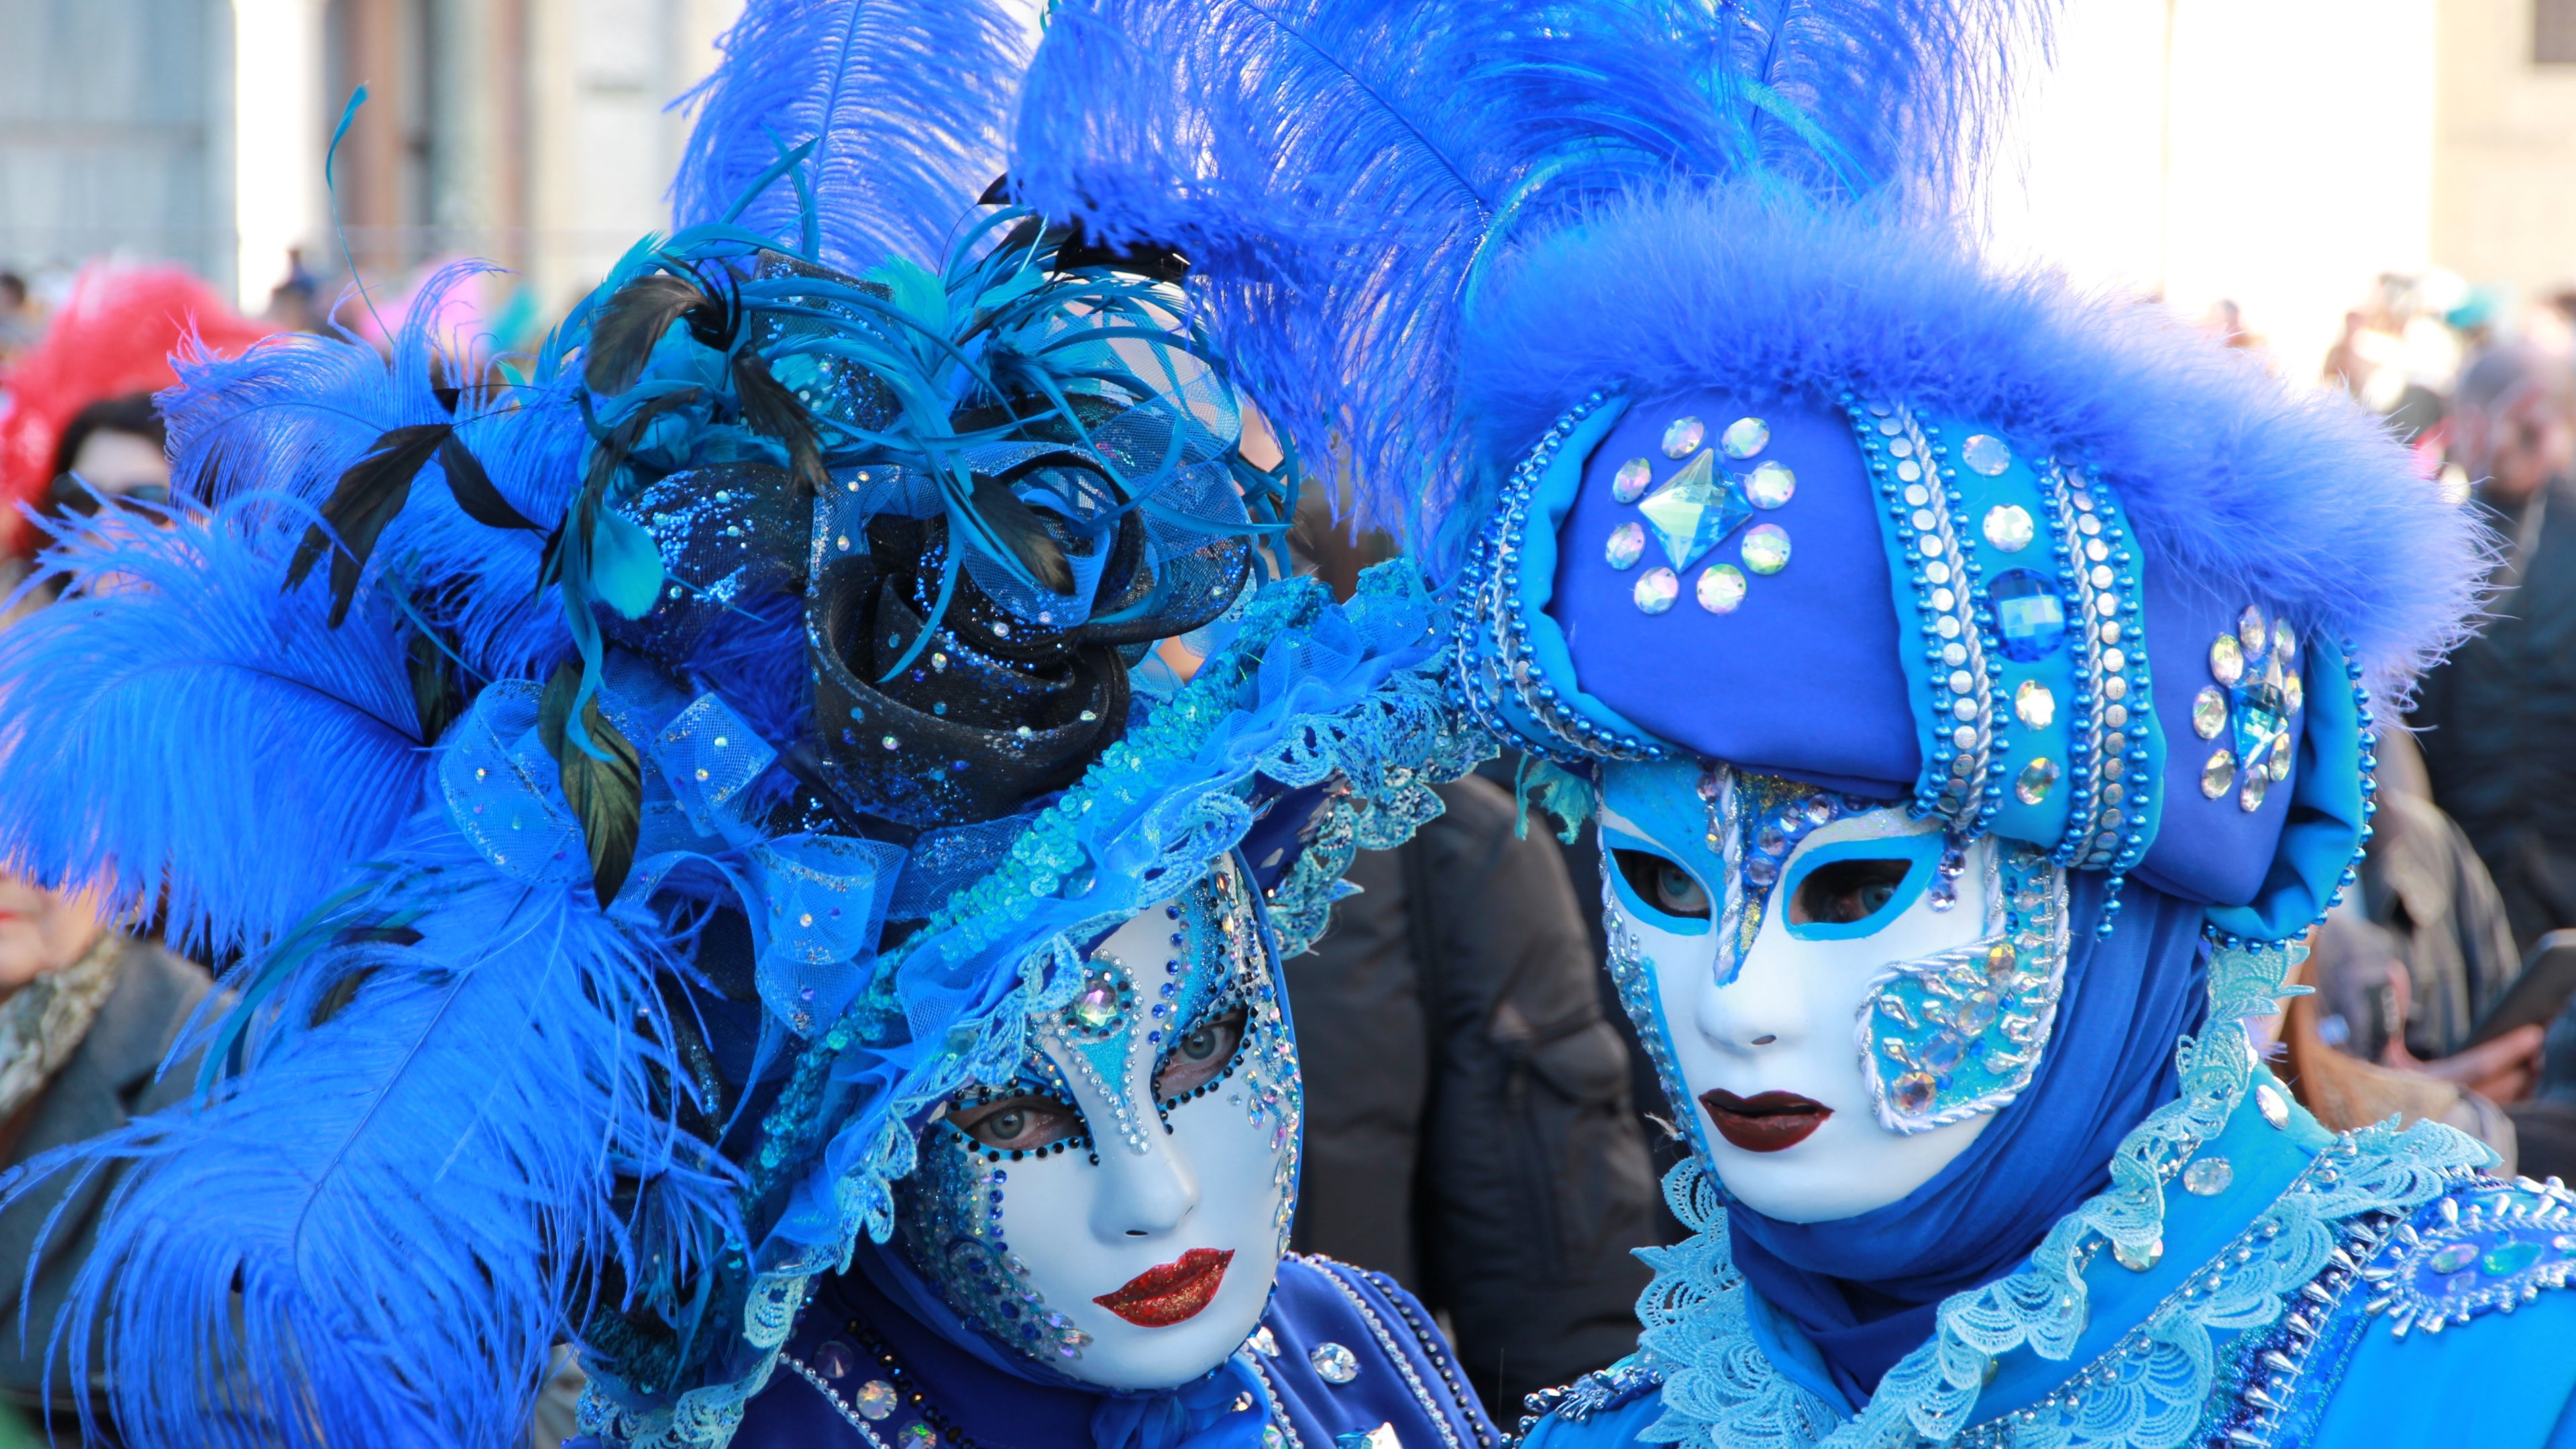 Mask at Venice Carnival by Vasile Pralea